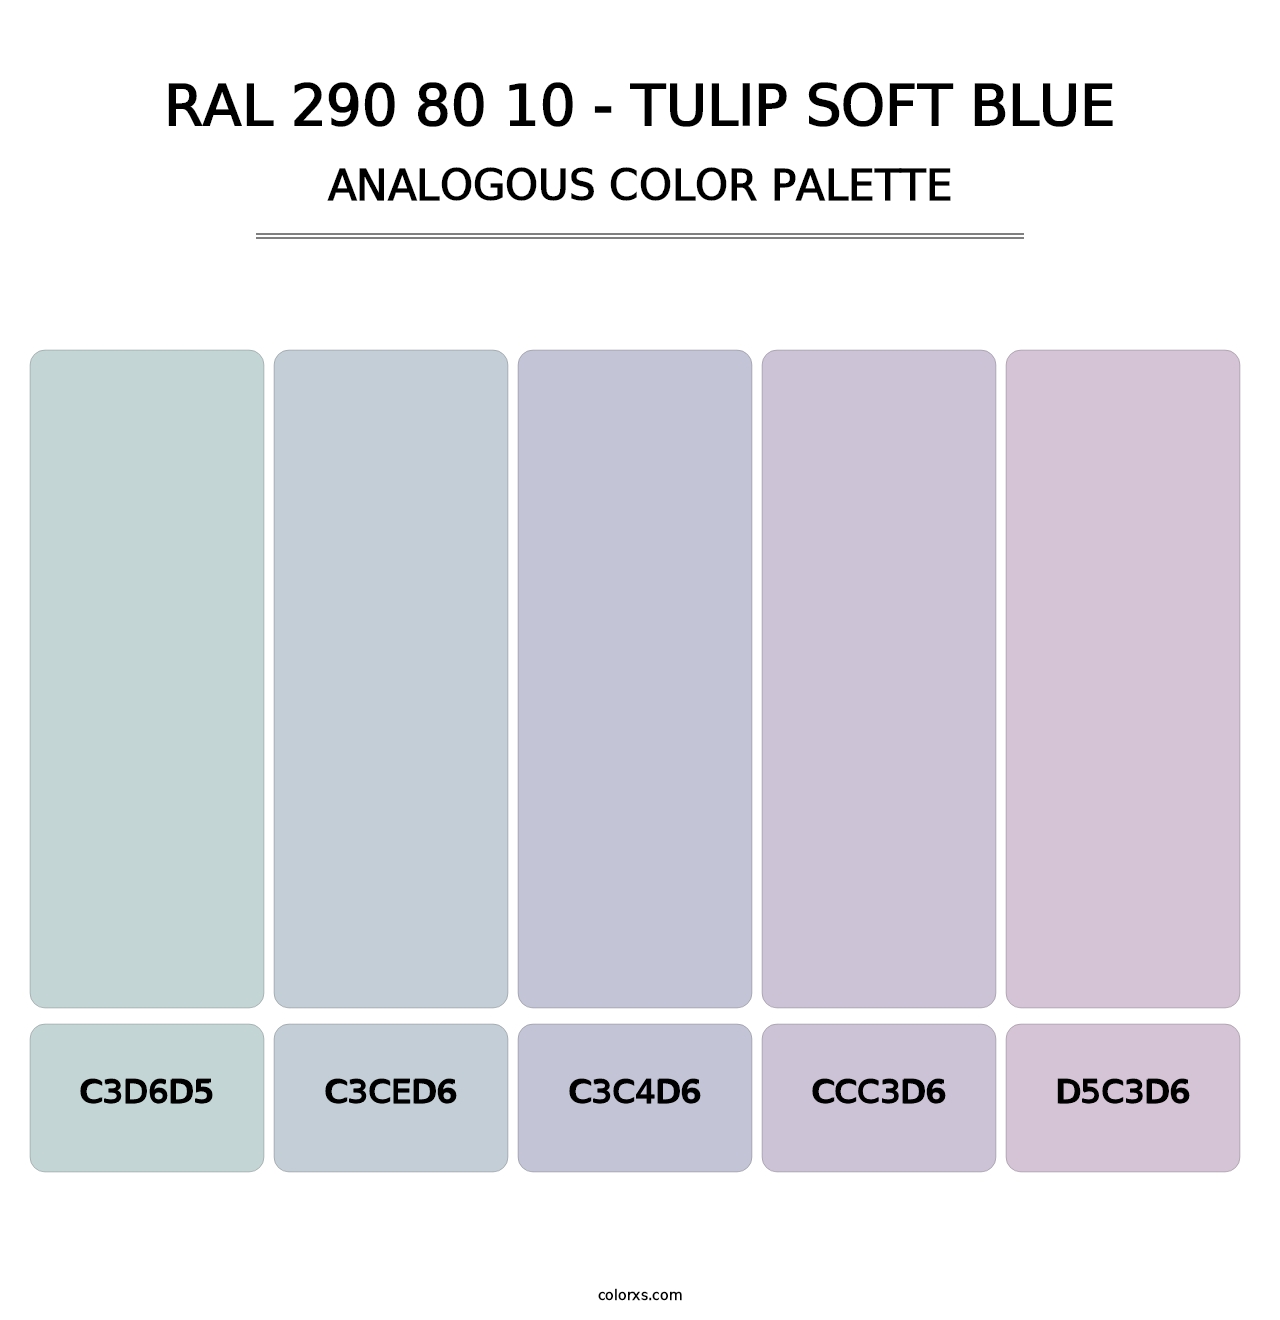 RAL 290 80 10 - Tulip Soft Blue - Analogous Color Palette